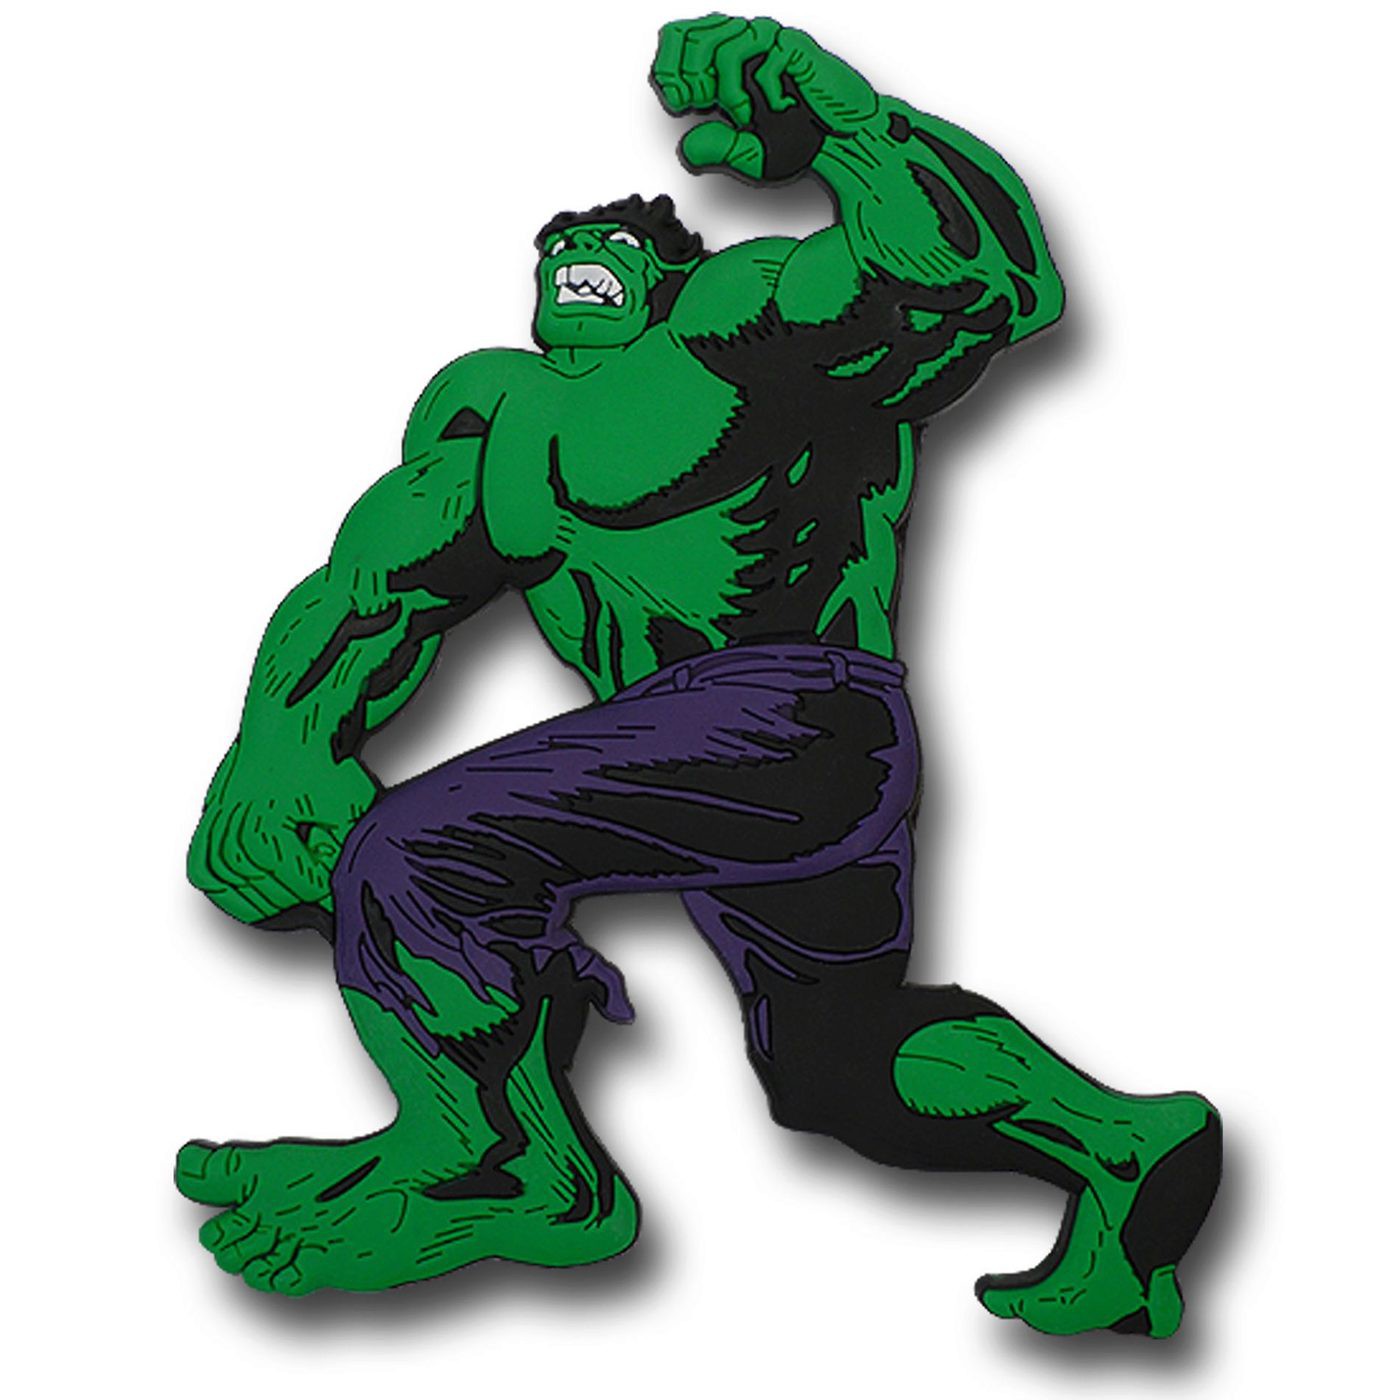 Hulk No Like Spiders 3D Die Cut Magnet